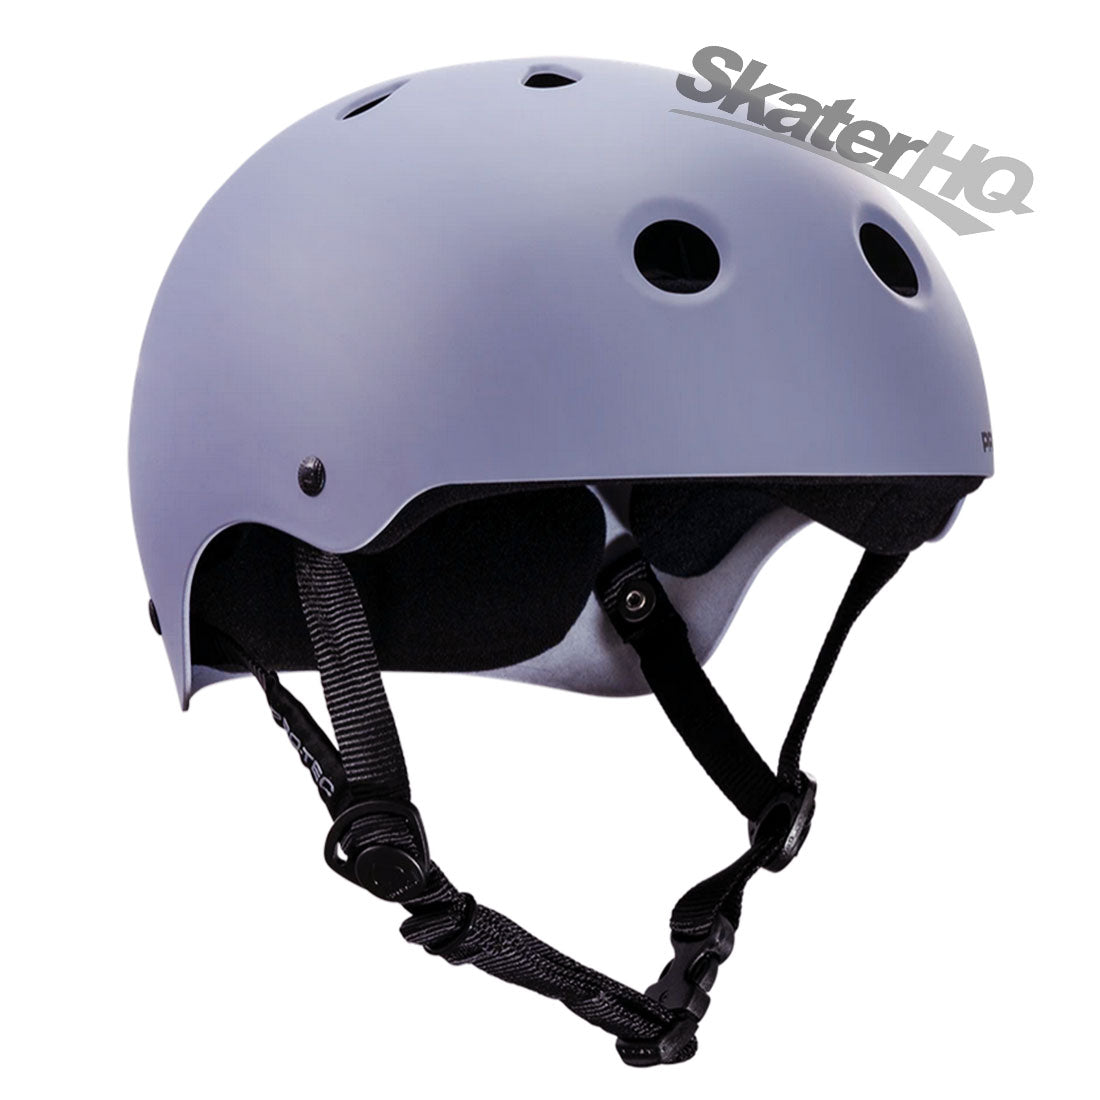 Pro-Tec Classic Skate Matte Lavender - XLarge Helmets